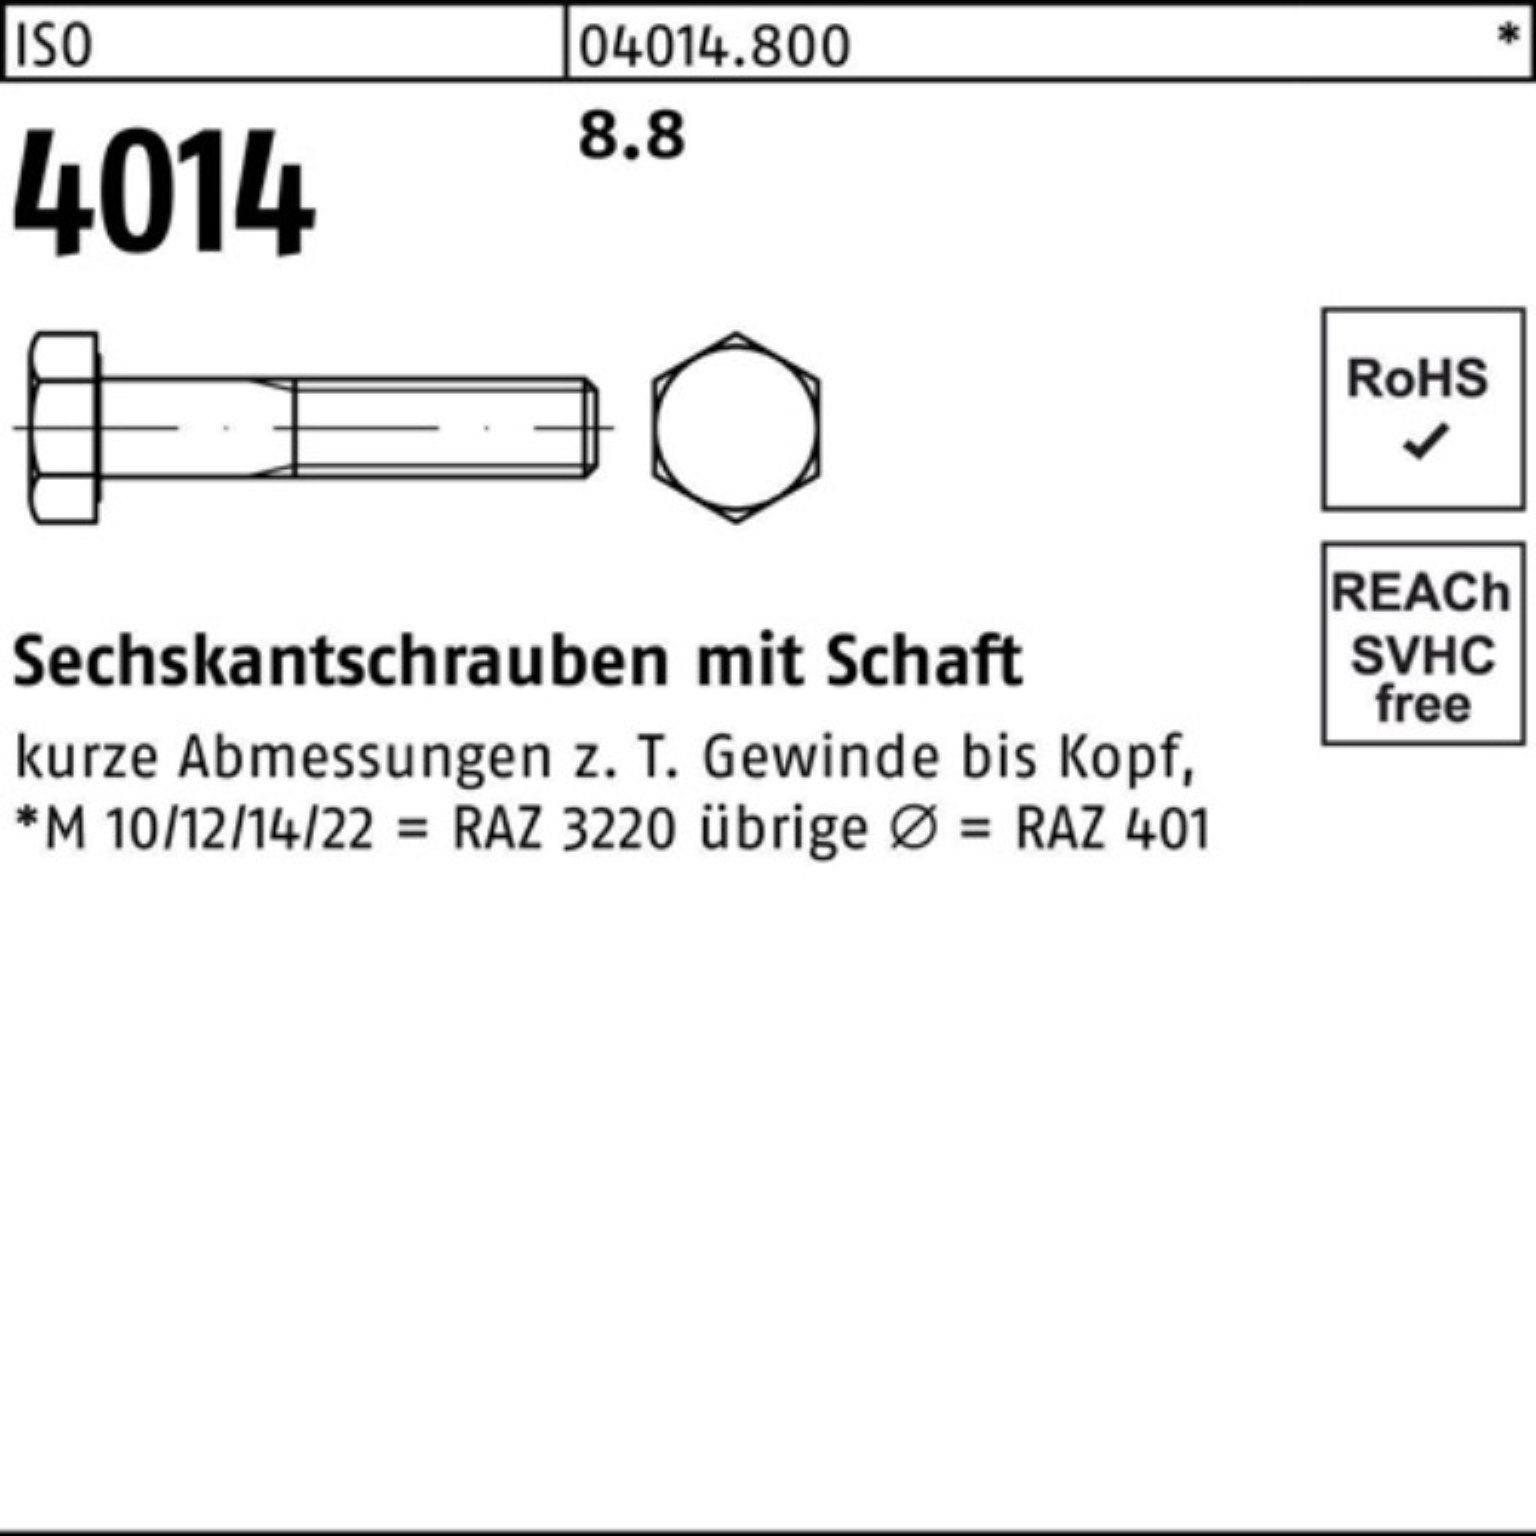 Schaft Bufab 100er M5x Pack 4014 Stück ISO 30 8.8 Sechskantschraube Sechskantschraube 100 ISO